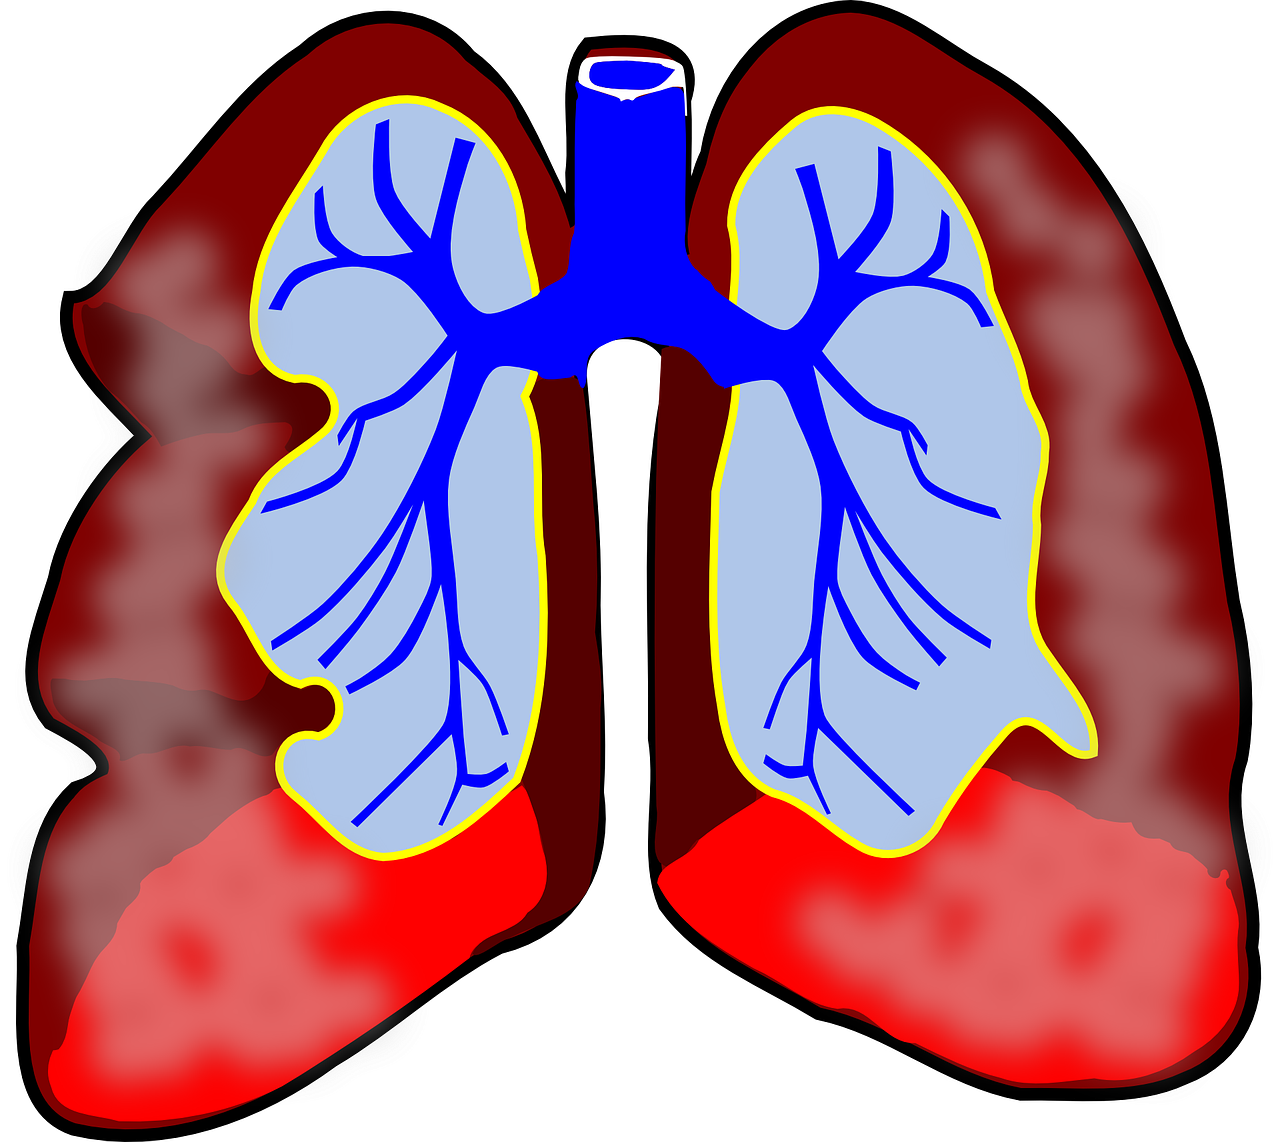 Plaučiai, Žmogus, Diagrama, Kvėpavimo Takai, Biologija, Kvėpavimas, Mokslas, Sistema, Oras, Sveikata